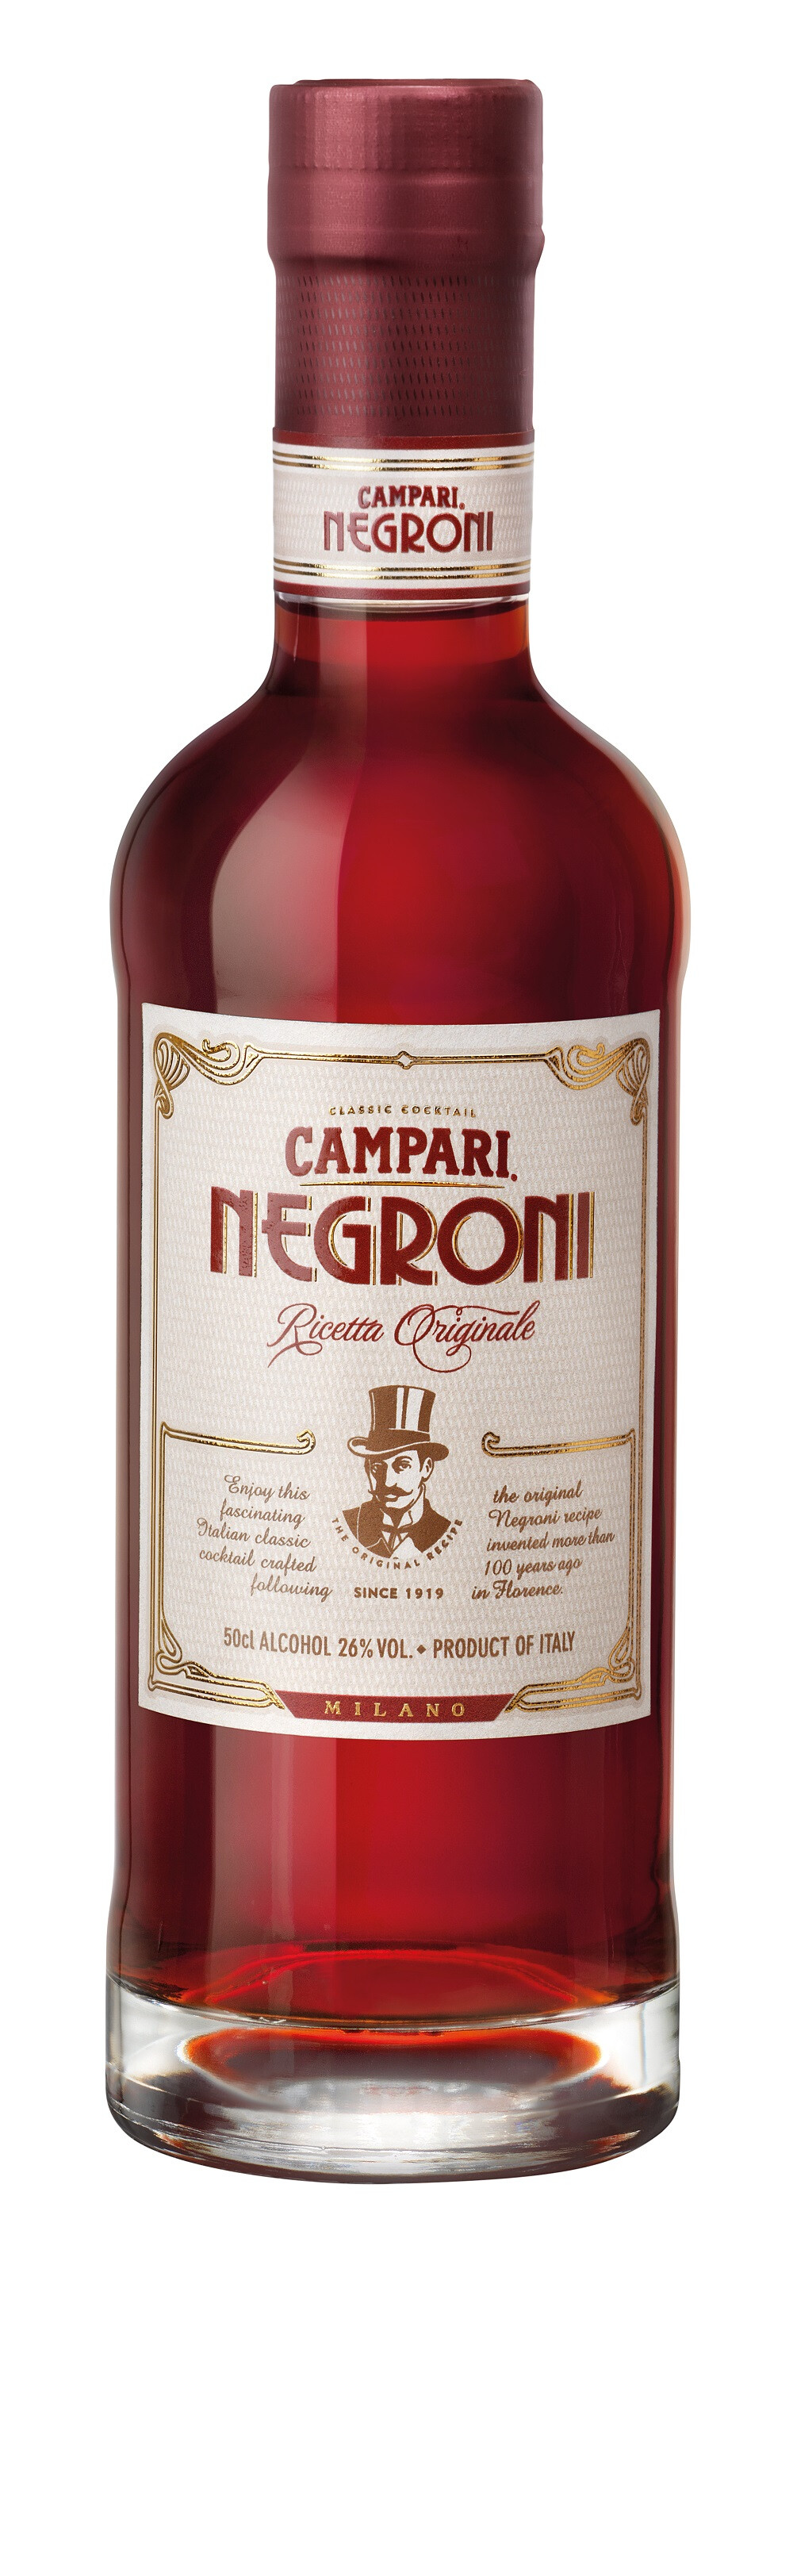 Campari Negroni 50cl 26% Cocktail